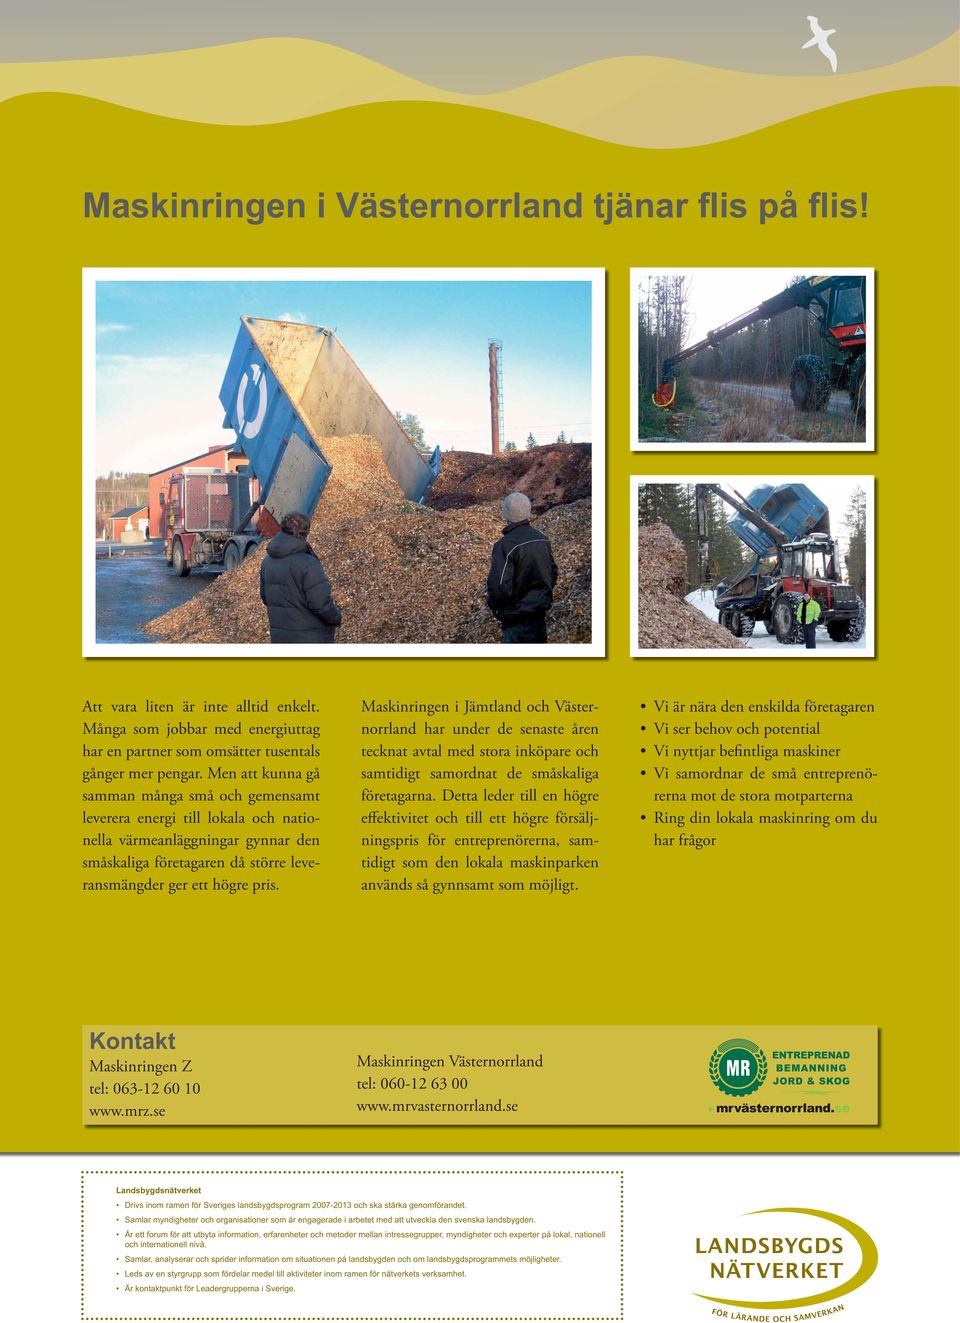 Maskinringen i Jämtland och Västernorrland har under de senaste åren tecknat avtal med stora inköpare och samtidigt samordnat de småskaliga företagarna.